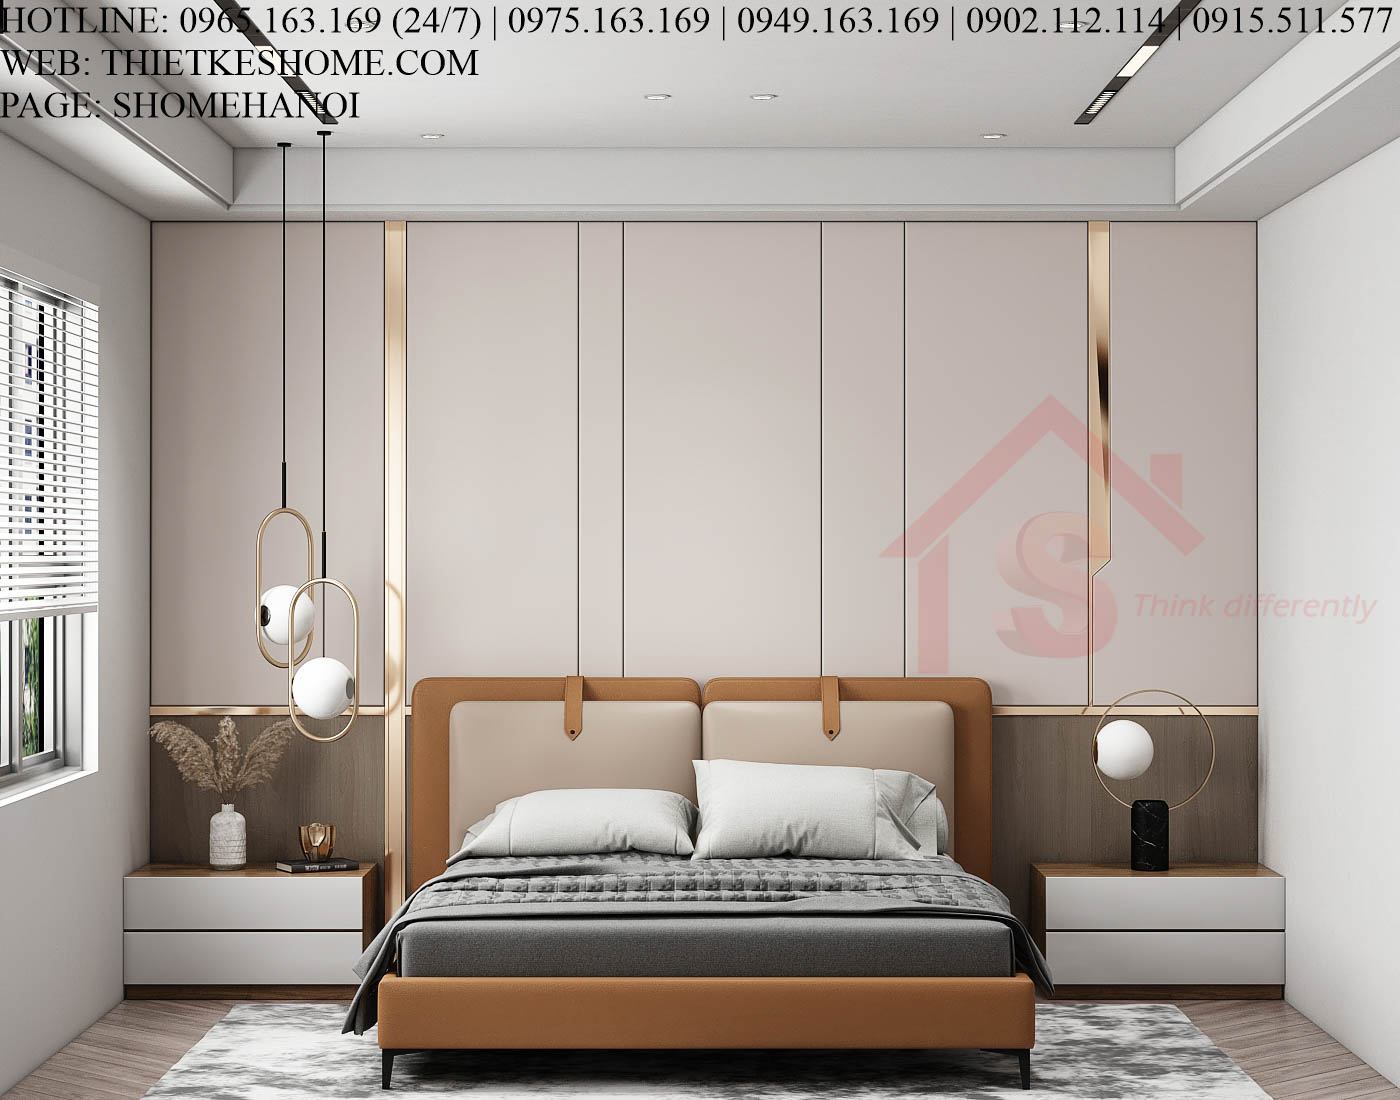 S HOME Combo mẫu nội thất phòng ngủ đẹp hiện đại tiện dụng SHOME6816